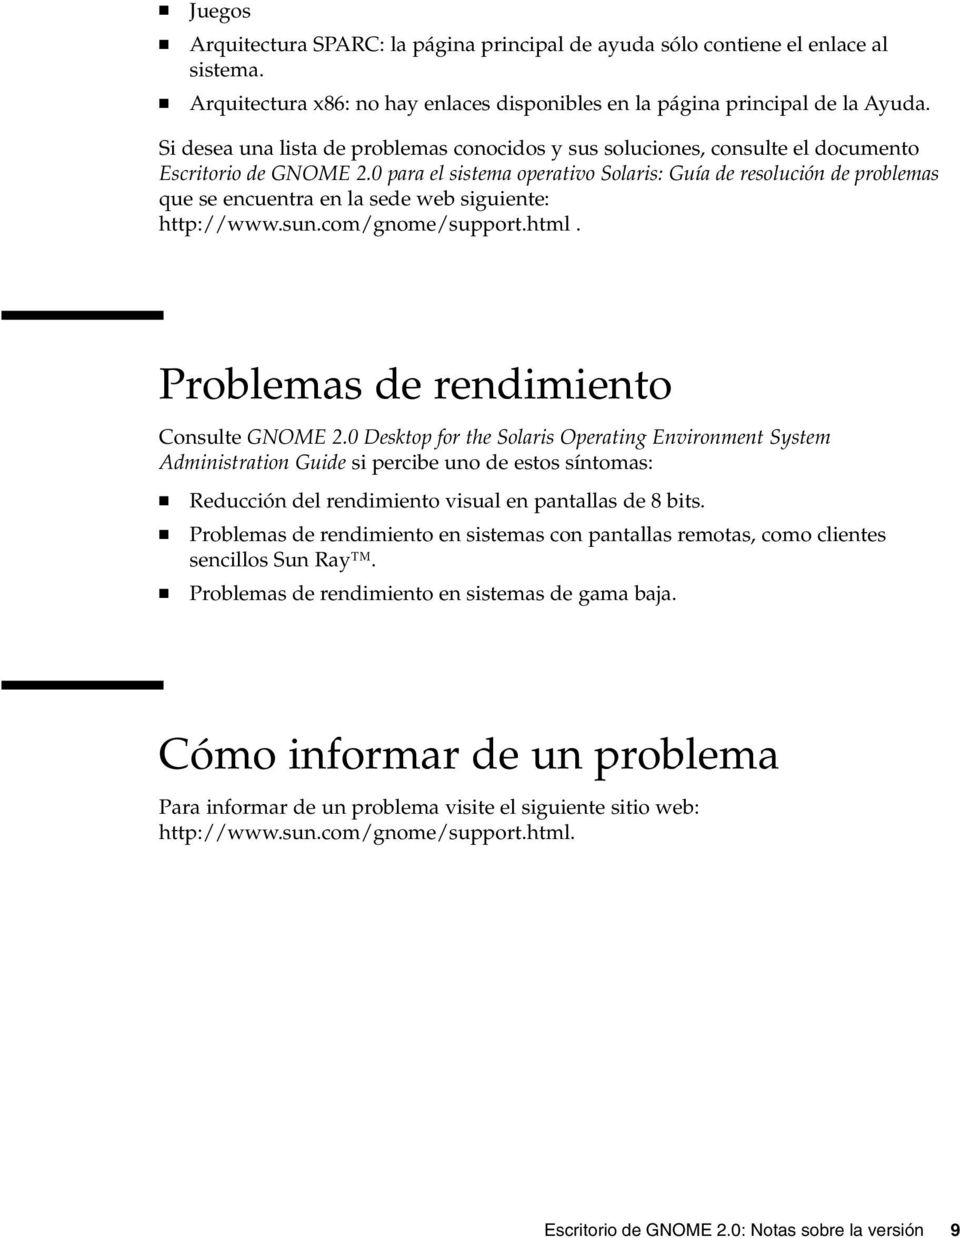 0 para el sistema operativo Solaris: Guía de resolución de problemas que se encuentra en la sede web siguiente: http://www.sun.com/gnome/support.html. Problemas de rendimiento Consulte GNOME 2.